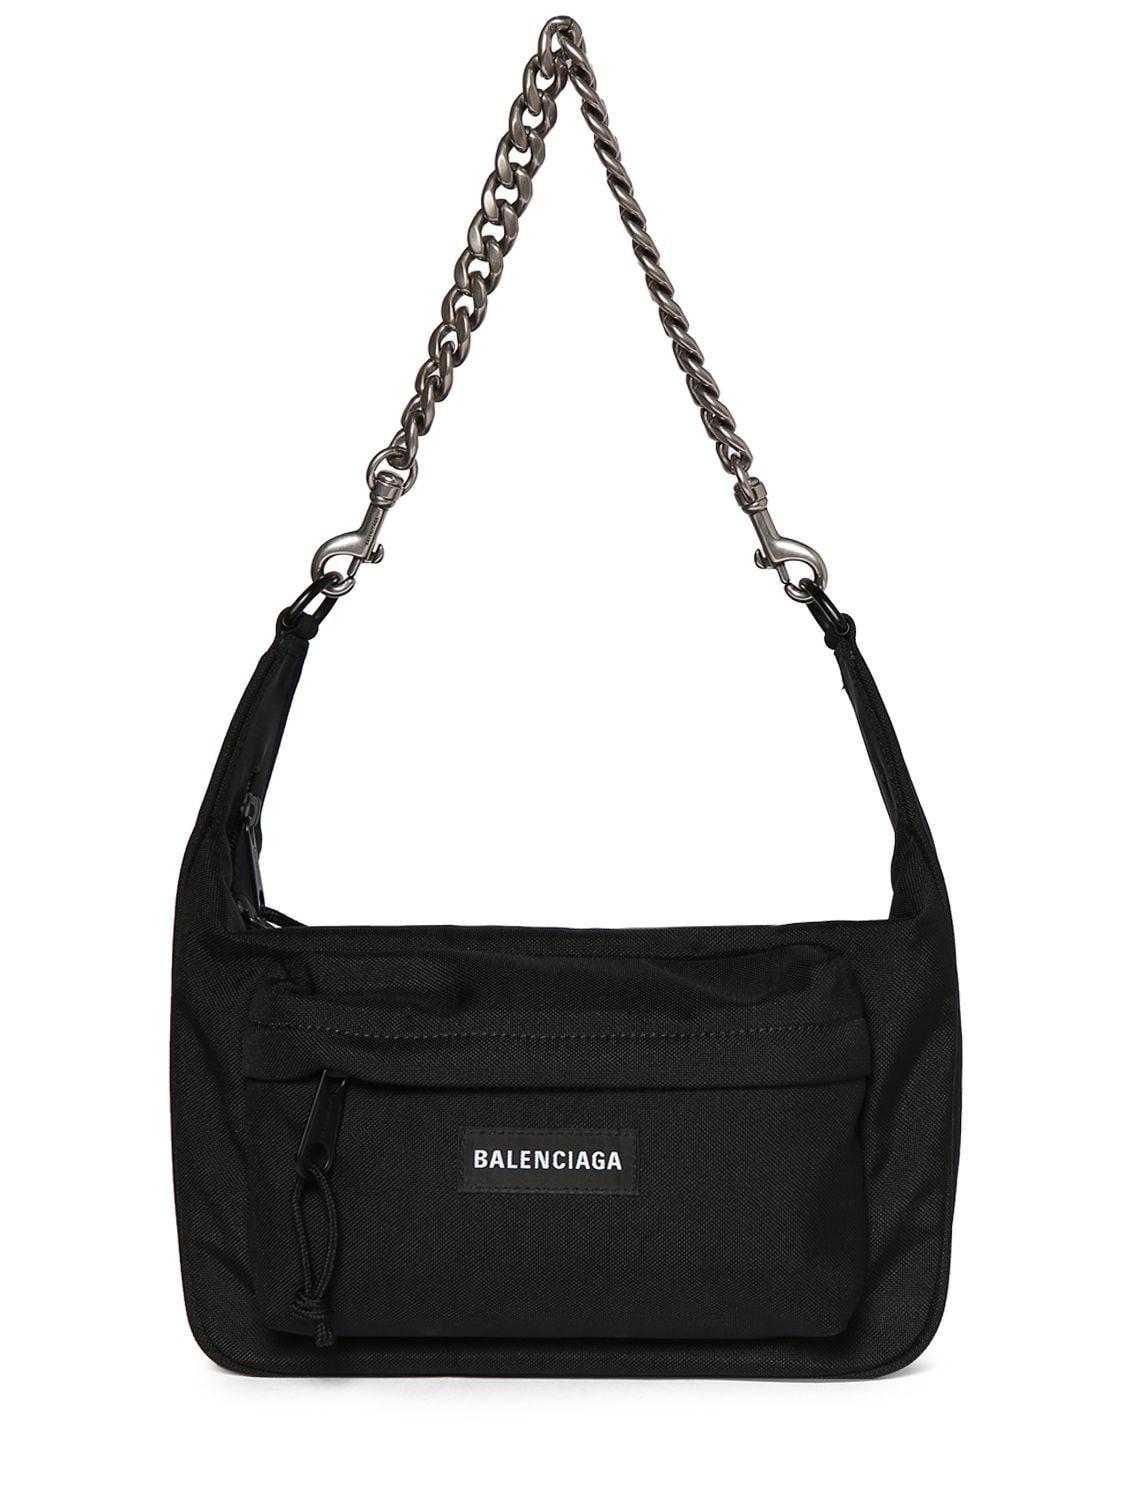 Balenciaga Medium Raver Nylon Bag in Black | Lyst